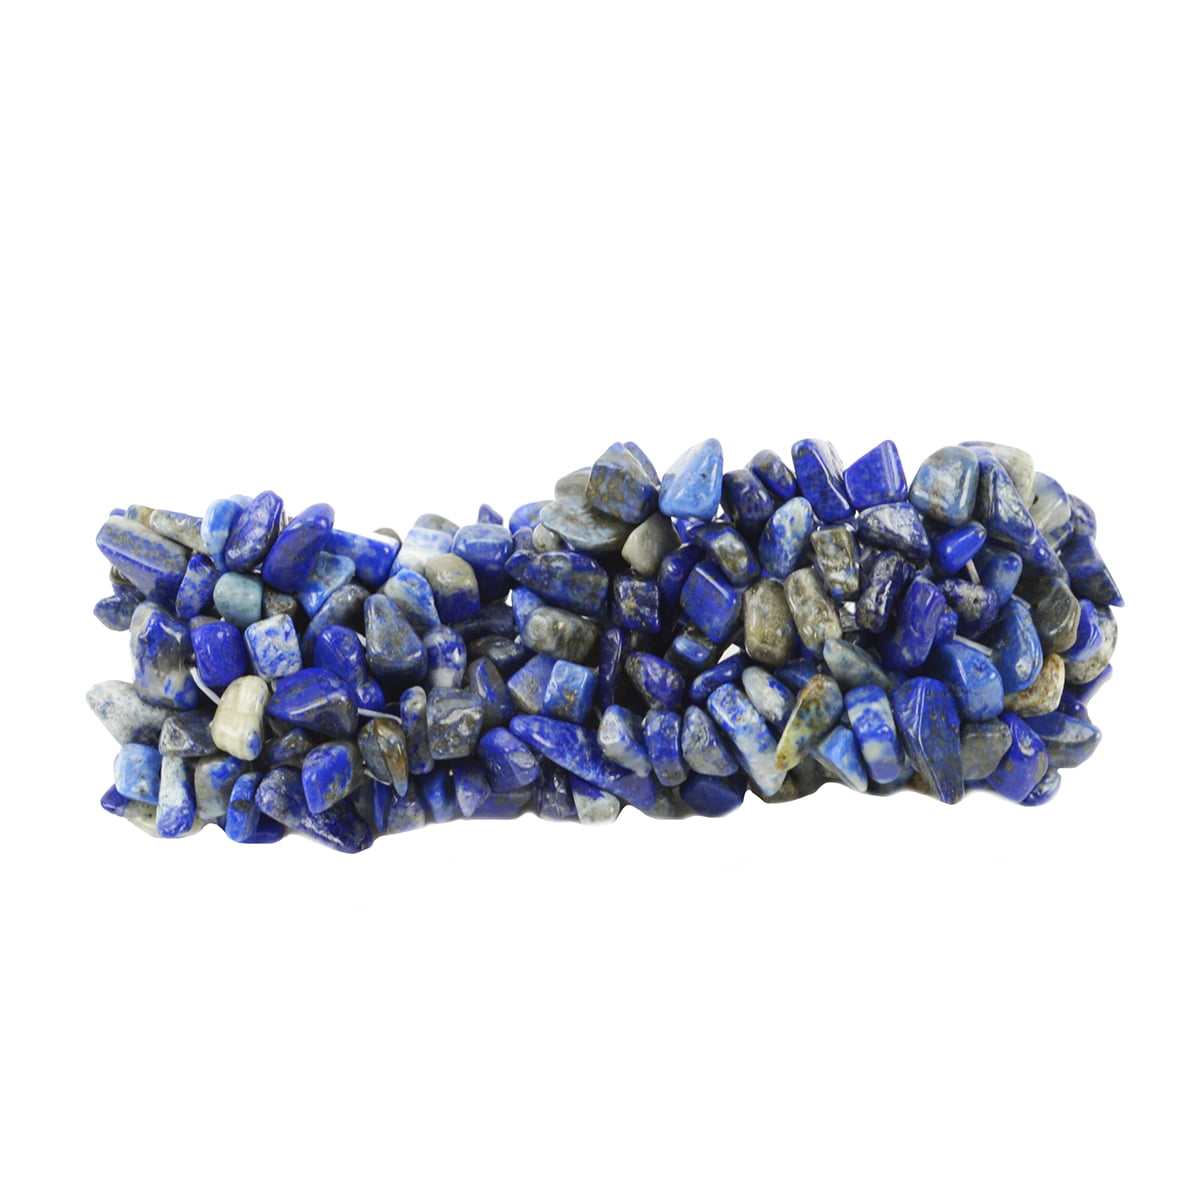 Lapis Lazuli 10mm Natural Dyed Gemstone Bracelet 6-9'' Elasticated Healing Stone